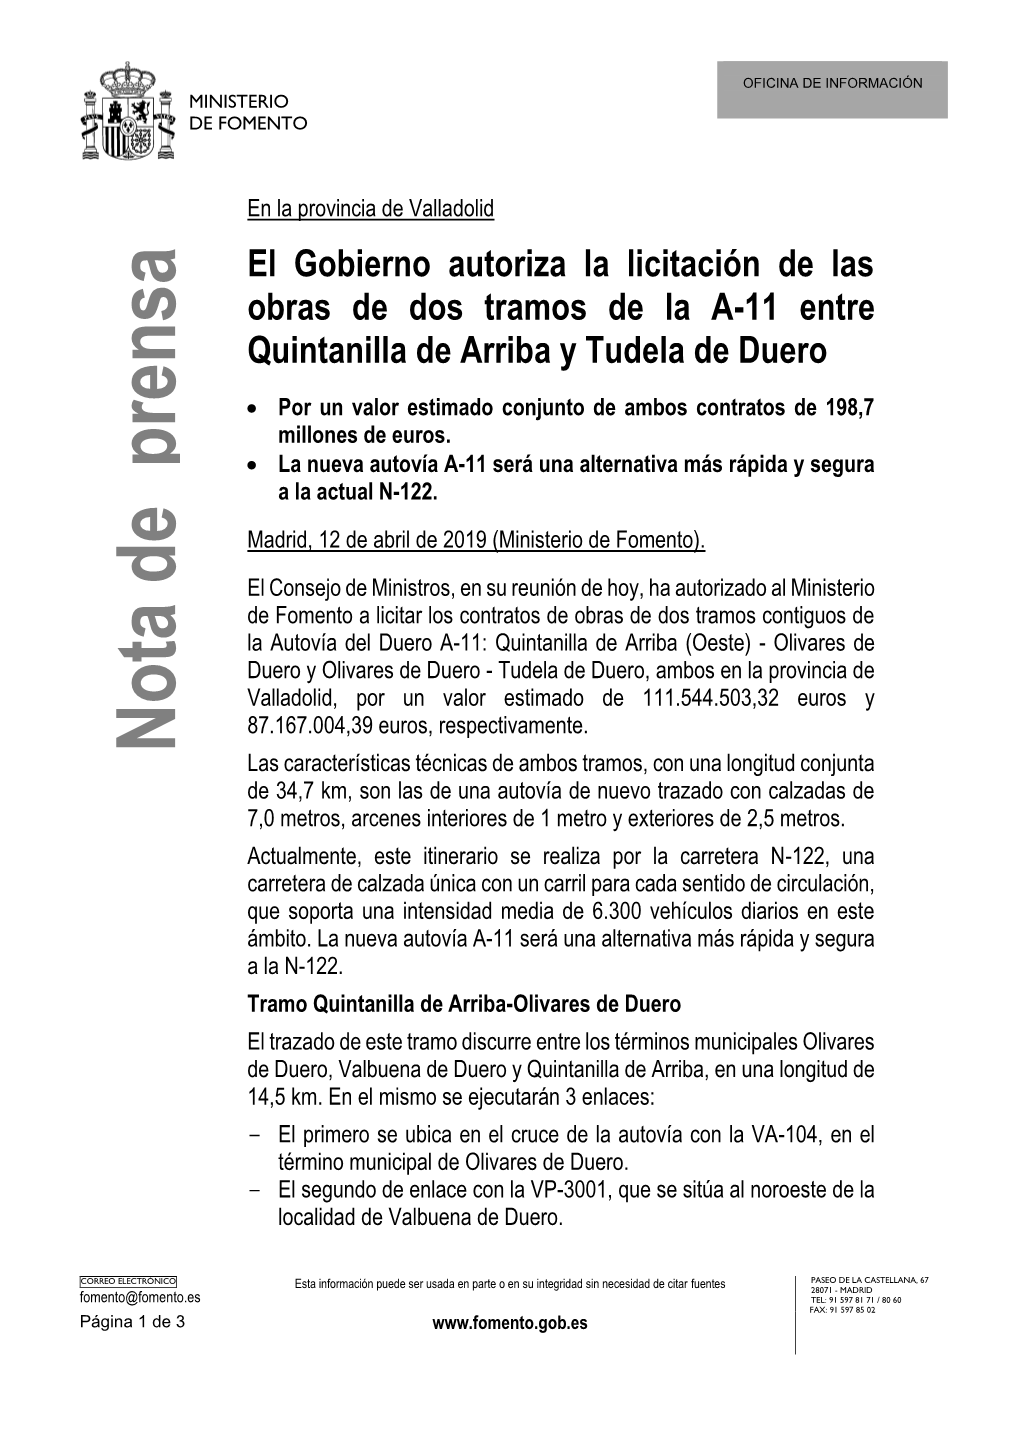 El Gobierno Autoriza La Licitación De Las Obras De Dos Tramos De La A-11 Entre Quintanilla De Arriba Y Tudela De Duero